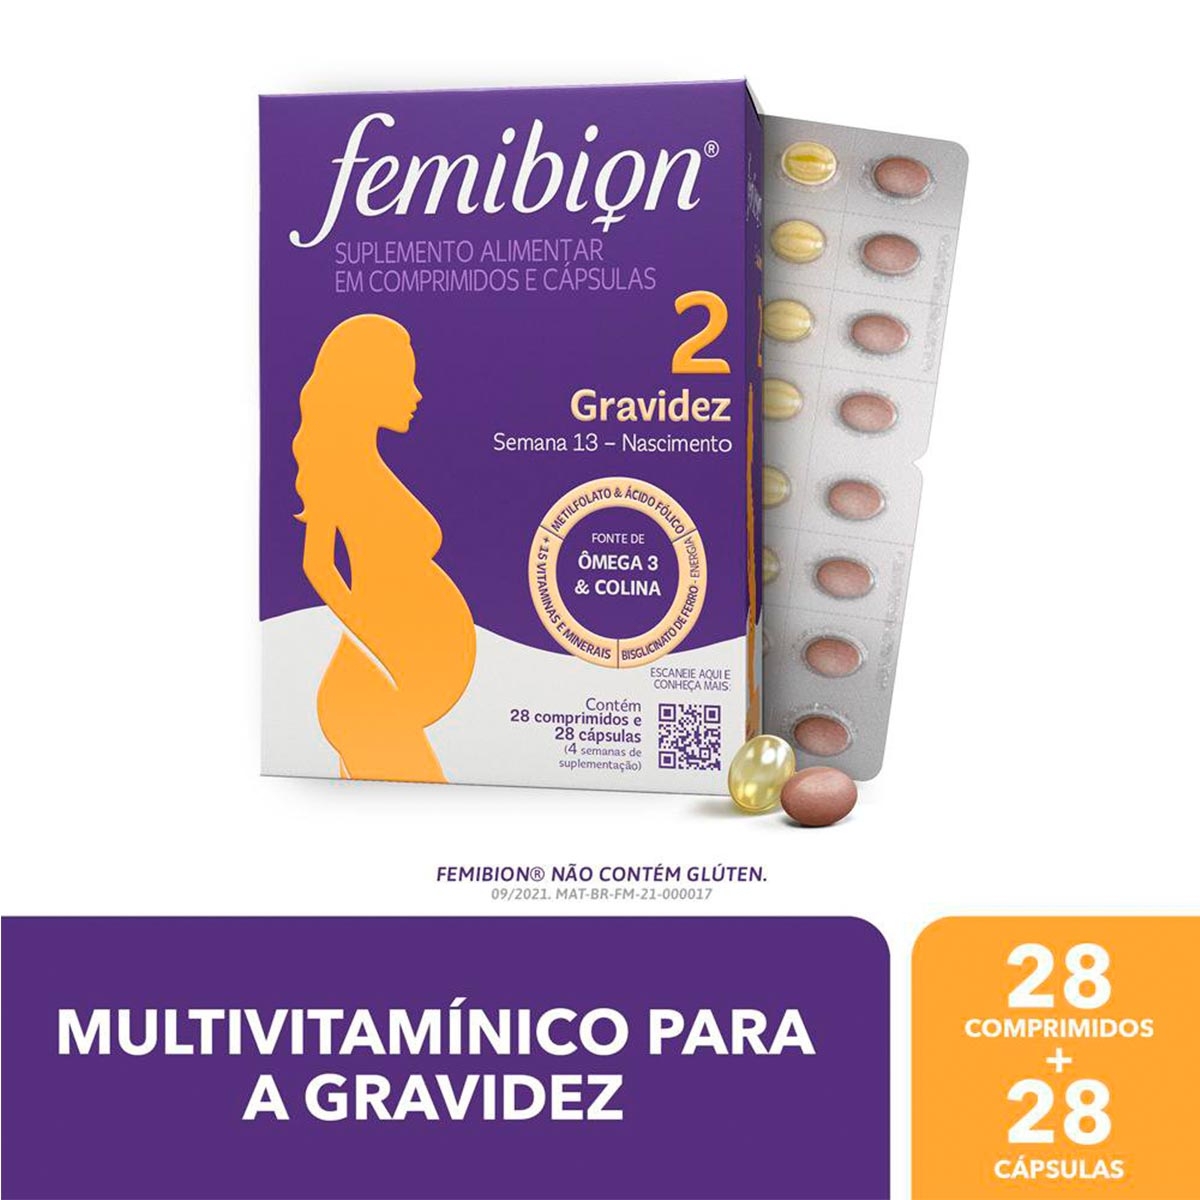 FEMIBION Multivitamínico Femibion 1 Planejamento E Início Da Gravidez 28  Comprimidos : : Saúde e Bem-Estar